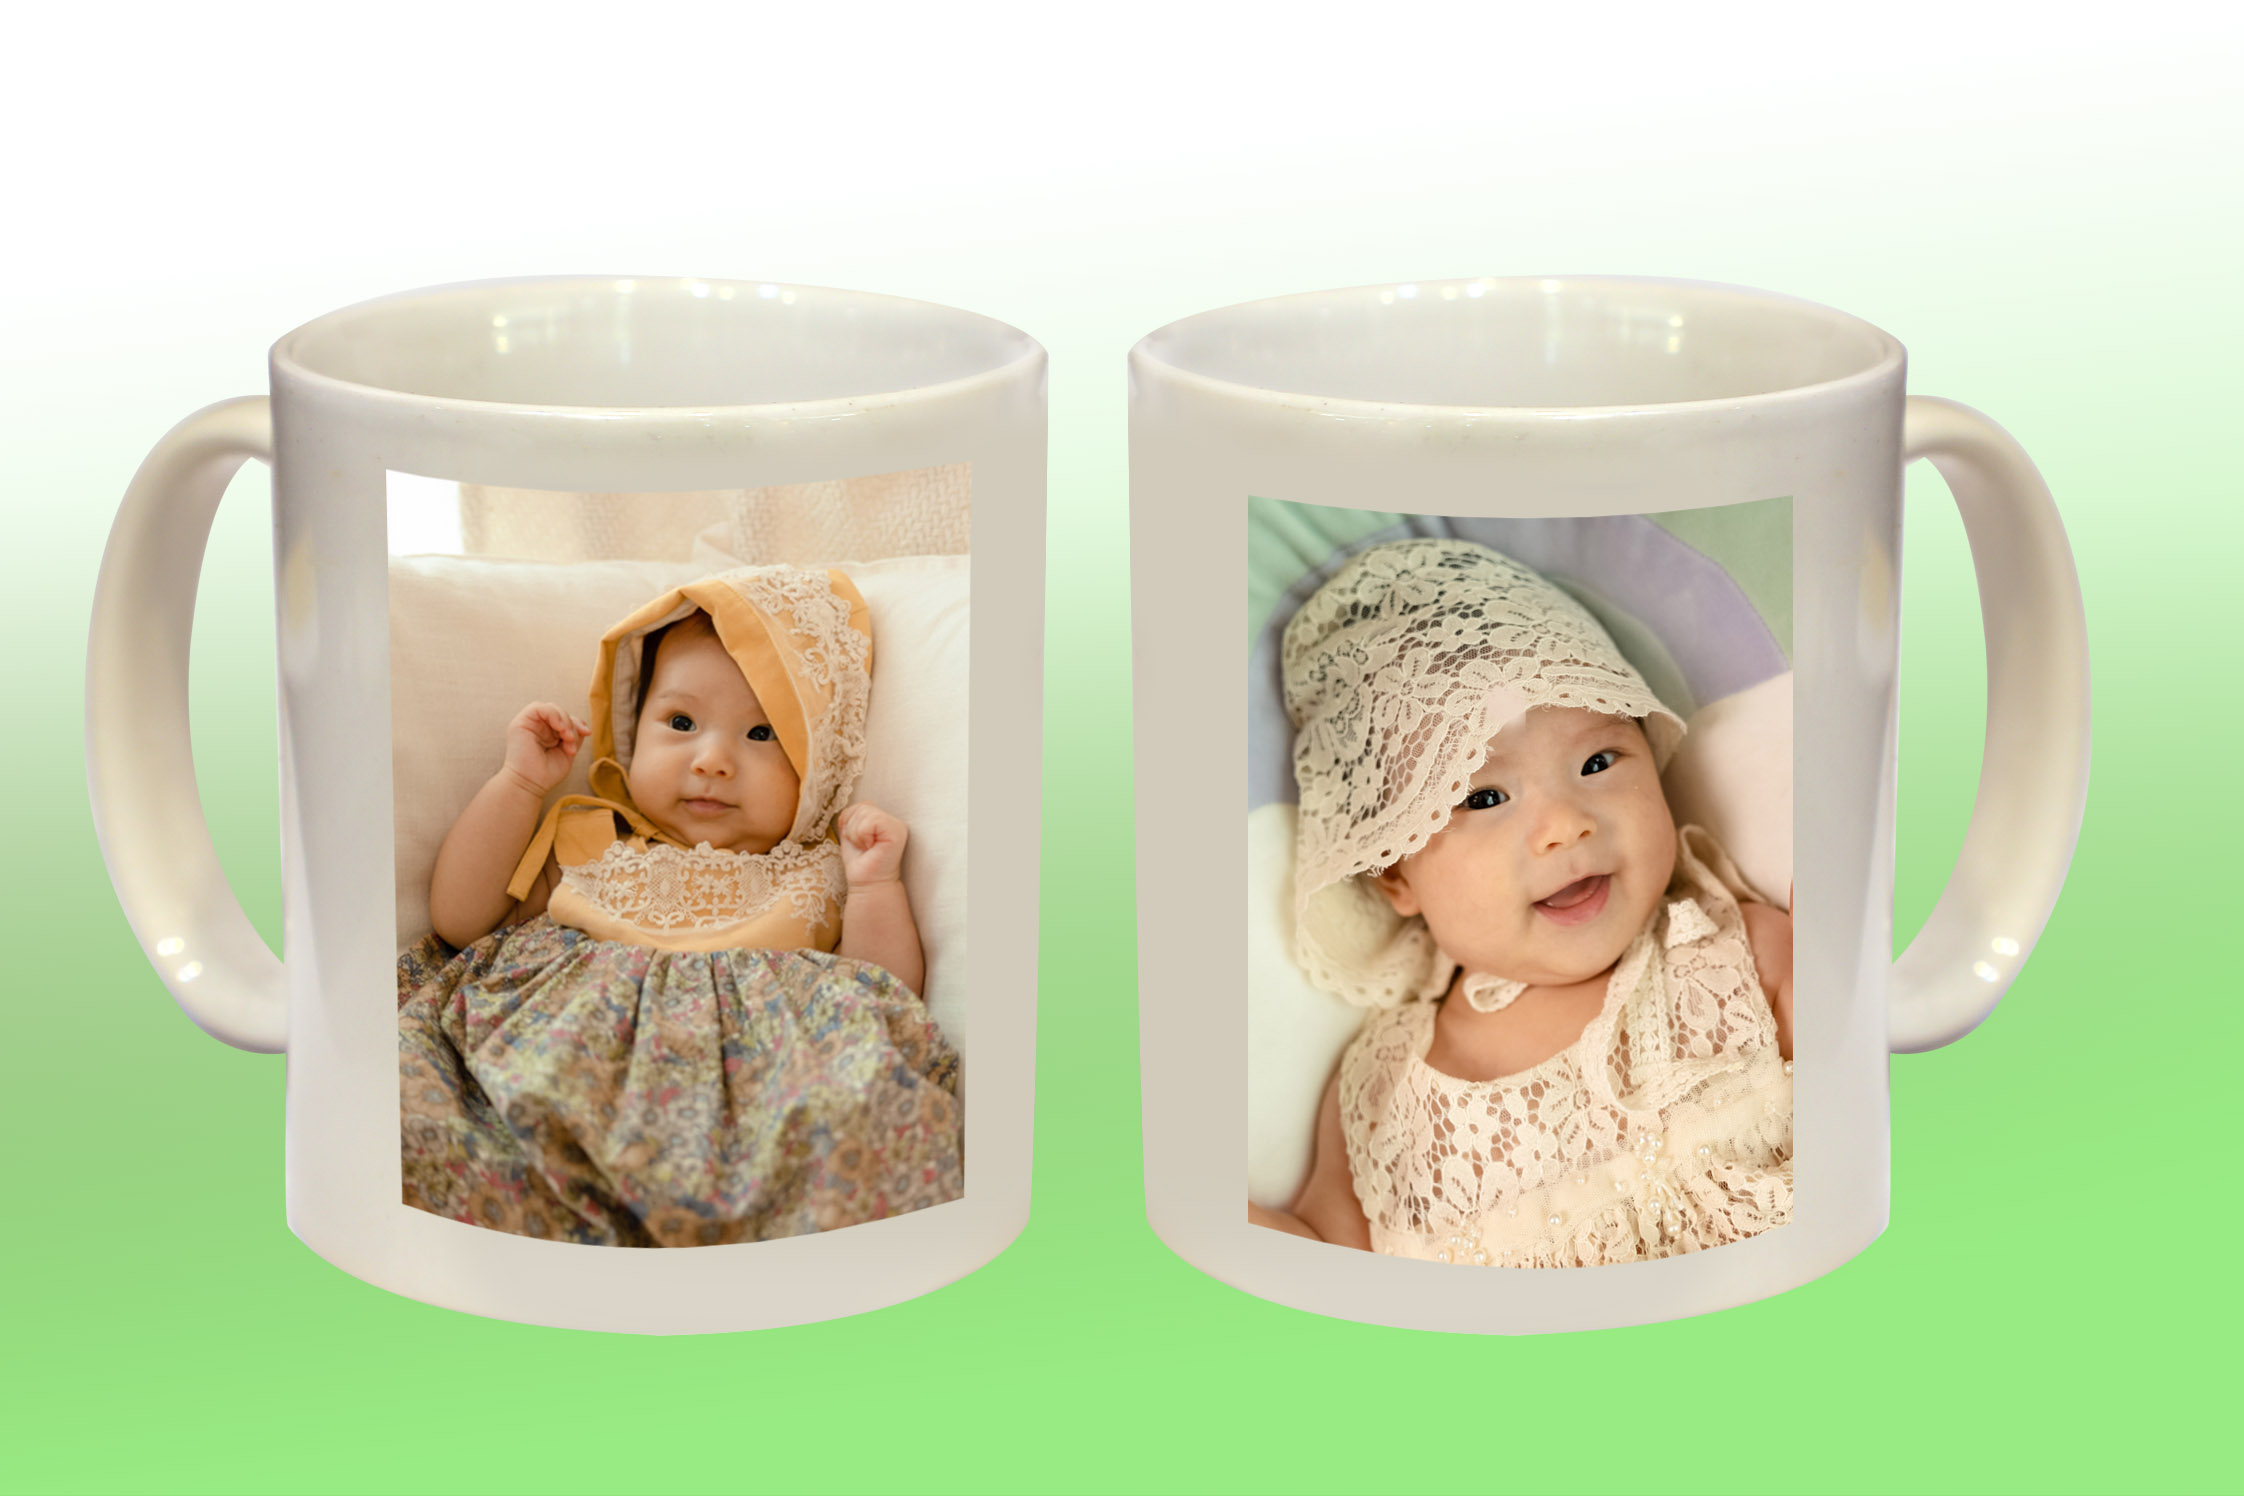 Mugs (two Image files)